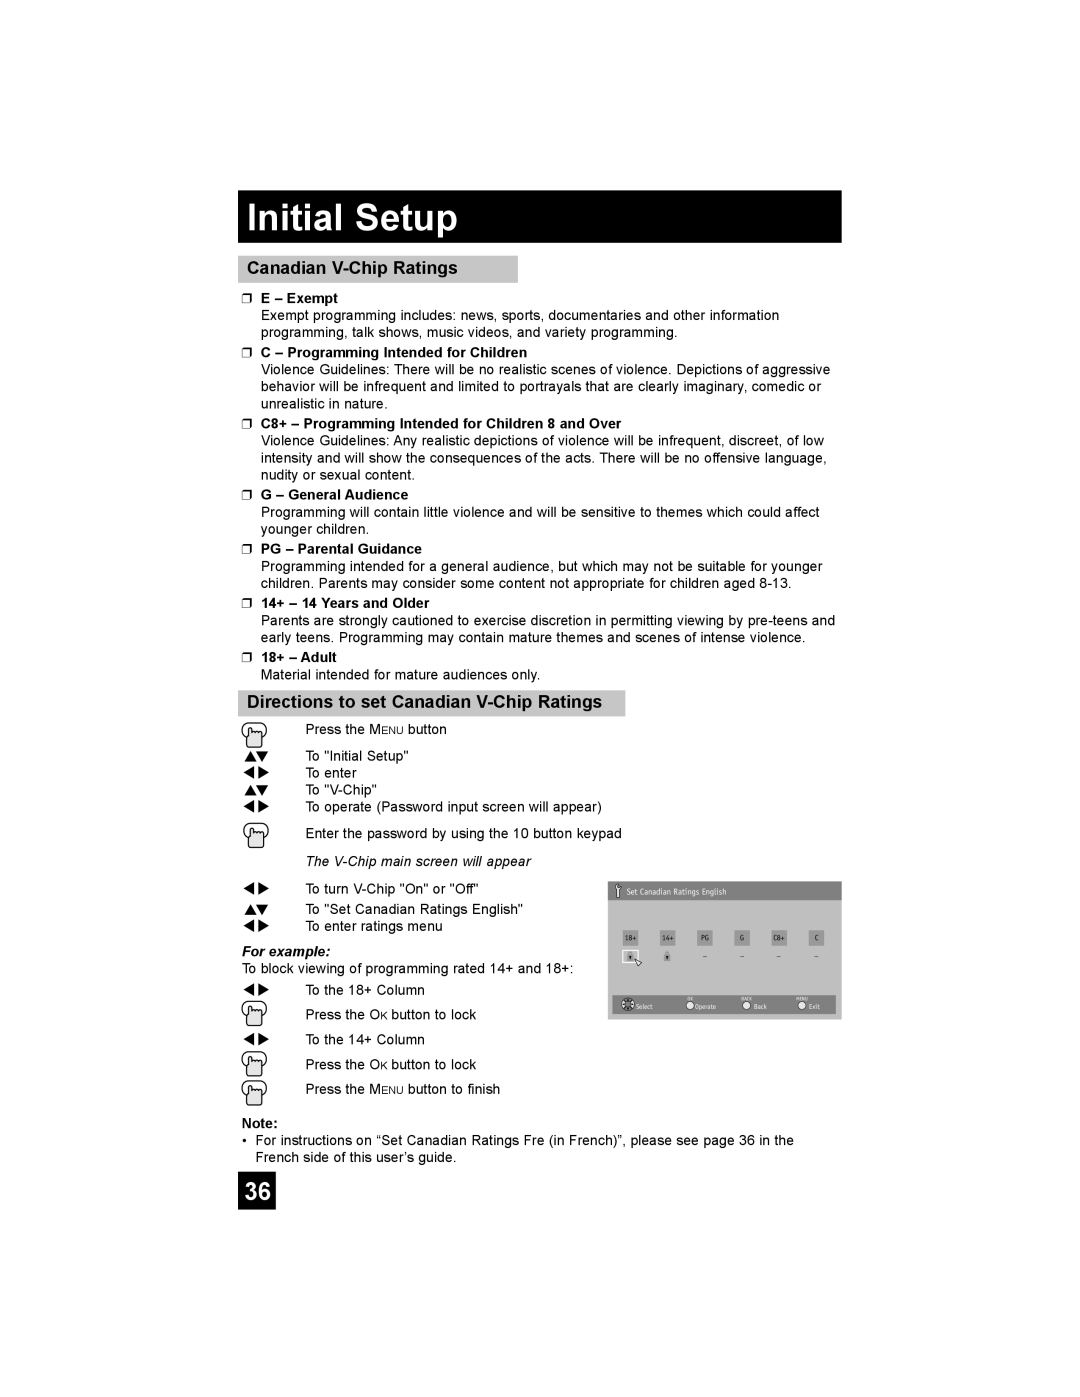 JVC AV-48P787 manual Initial Setup, E - Exempt, C - Programming Intended for Children, G – General Audience, 18+ – Adult 